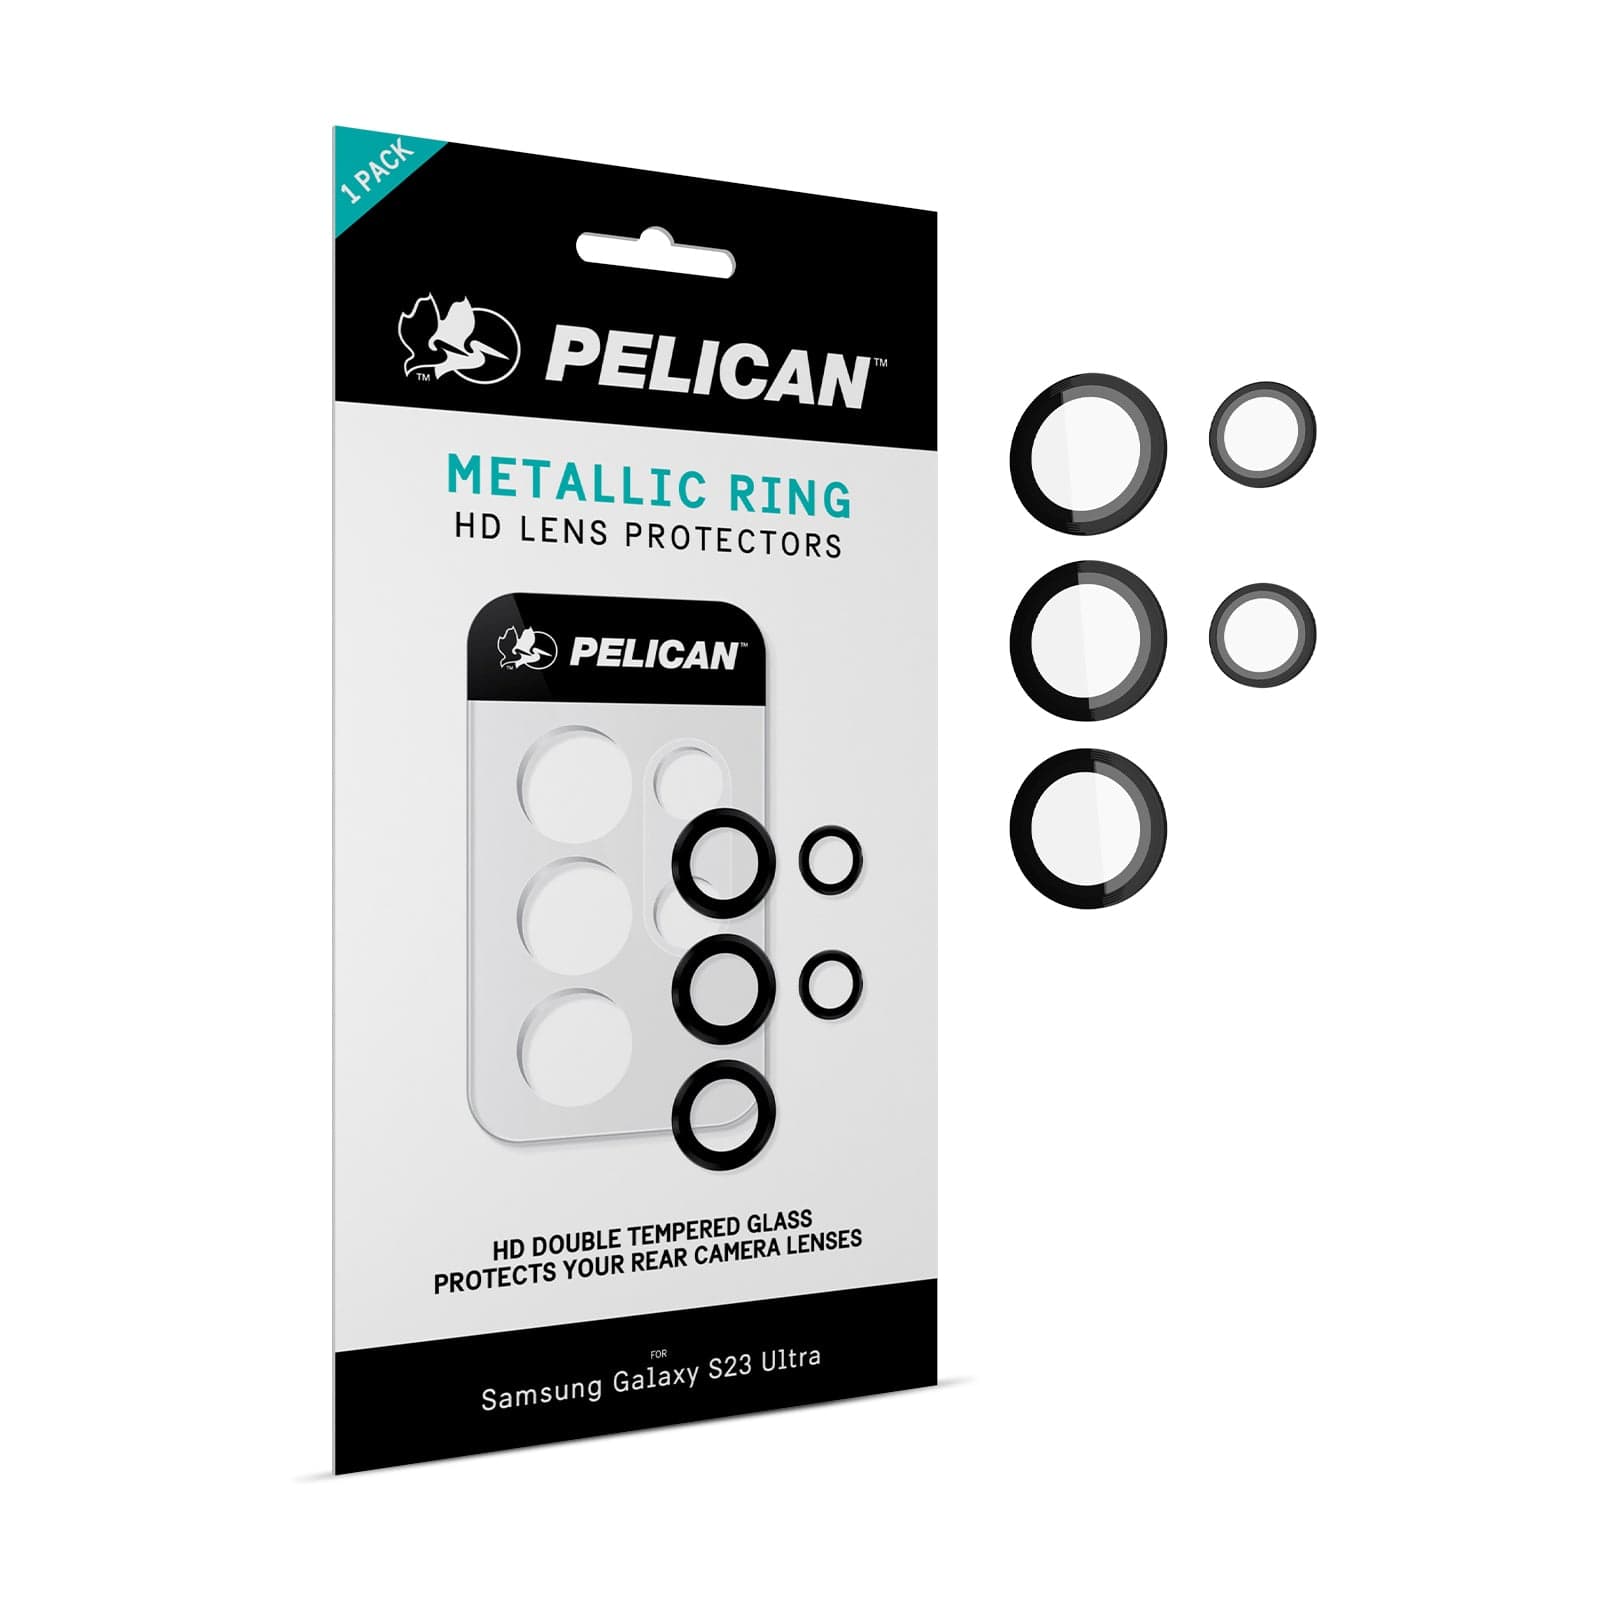 Pelican Aluminum Ring Lens Protectors - Galaxy S23 Ultra